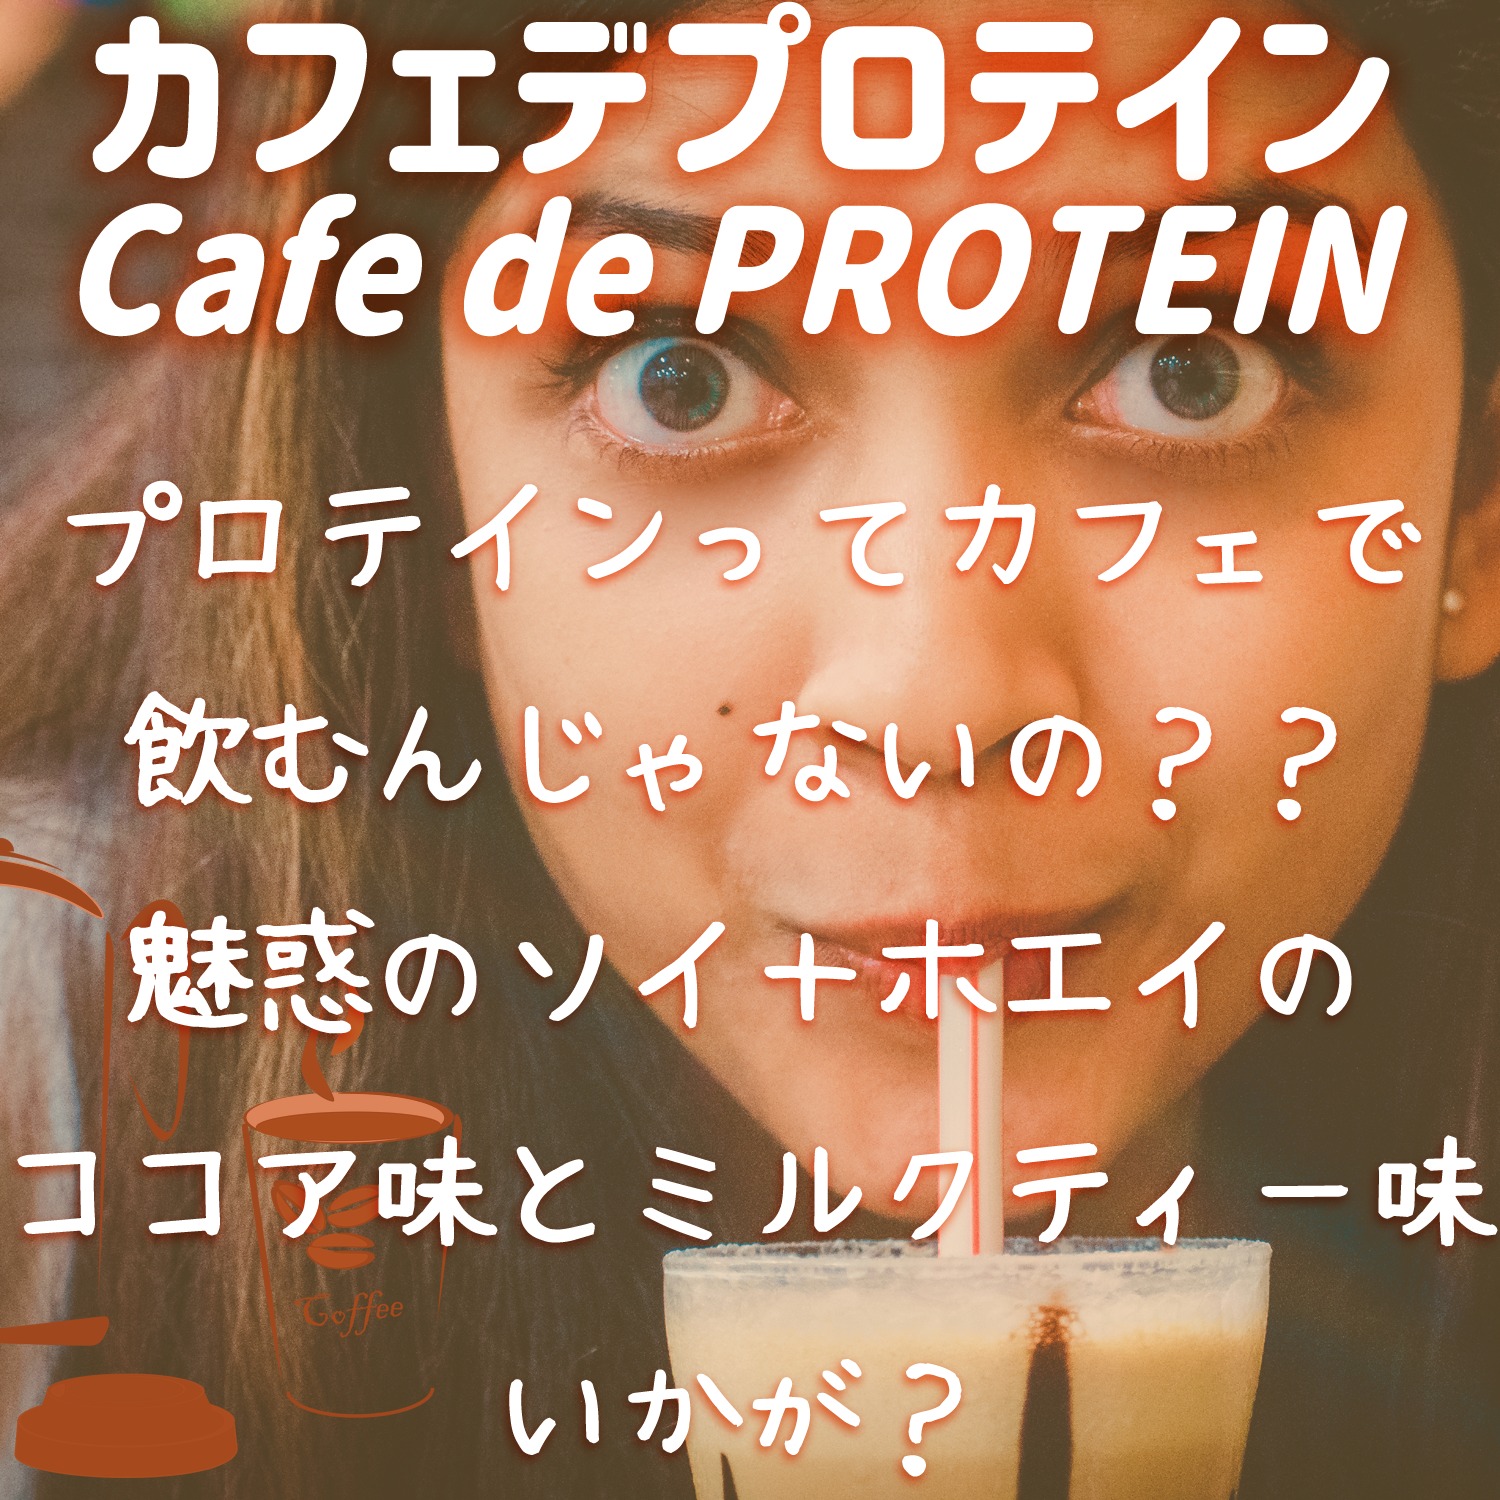 カフェデプロテイン CAFE DE PROTEINの特徴と口コミや評判と実感できそうな効果をレビュー